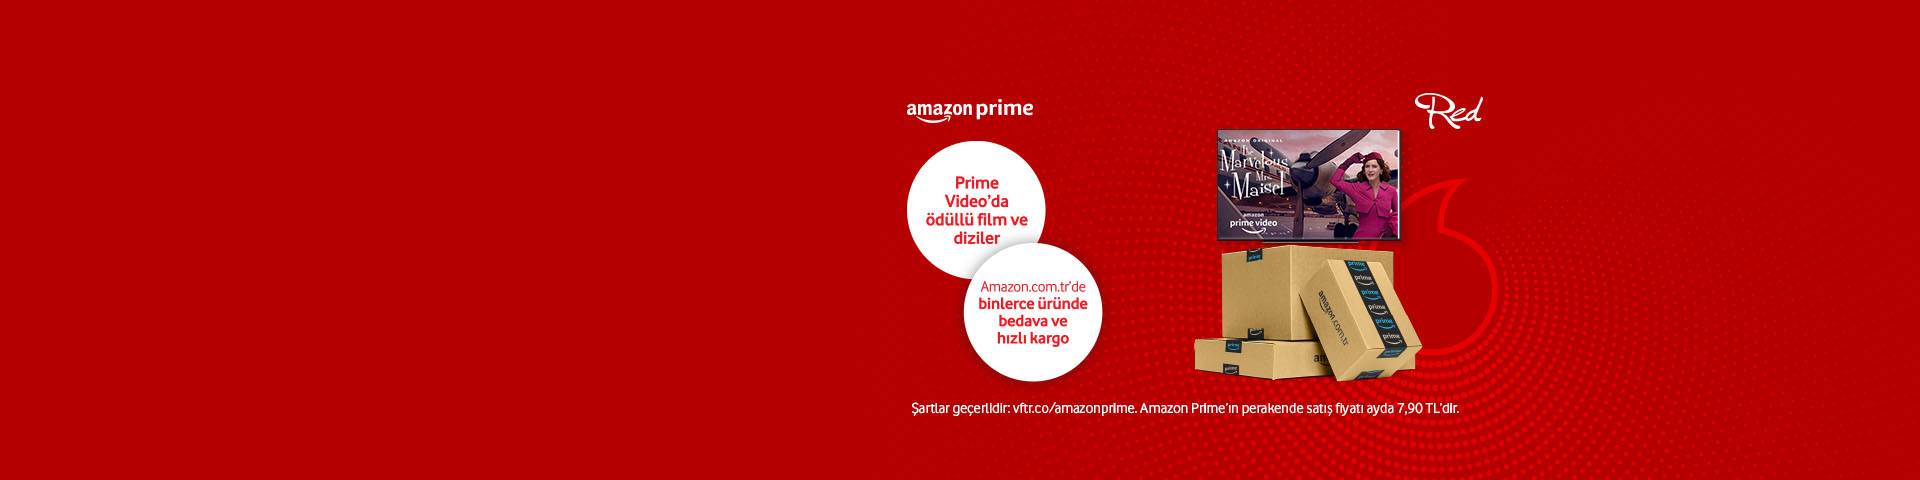 6 ay boyunca Amazon Prime üyeliği Vodafone Red’den!